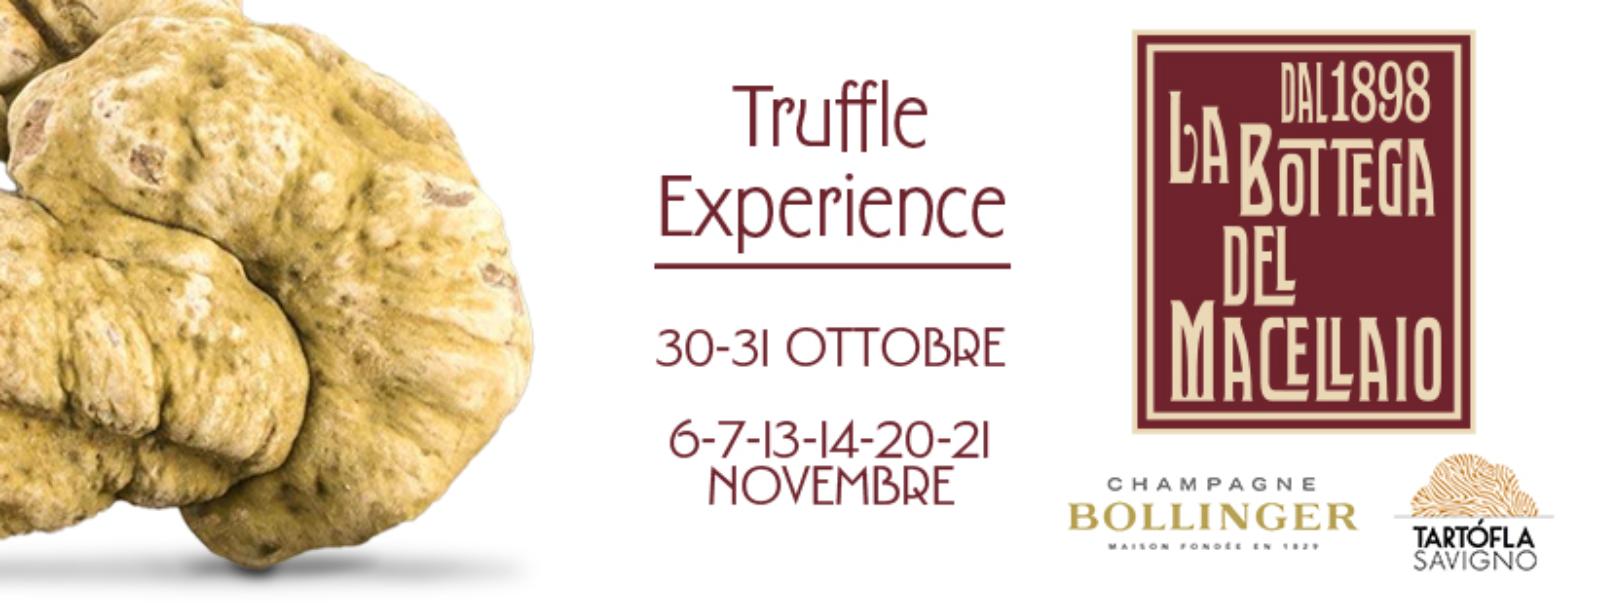 La bottega del macellaio | Truffle experience